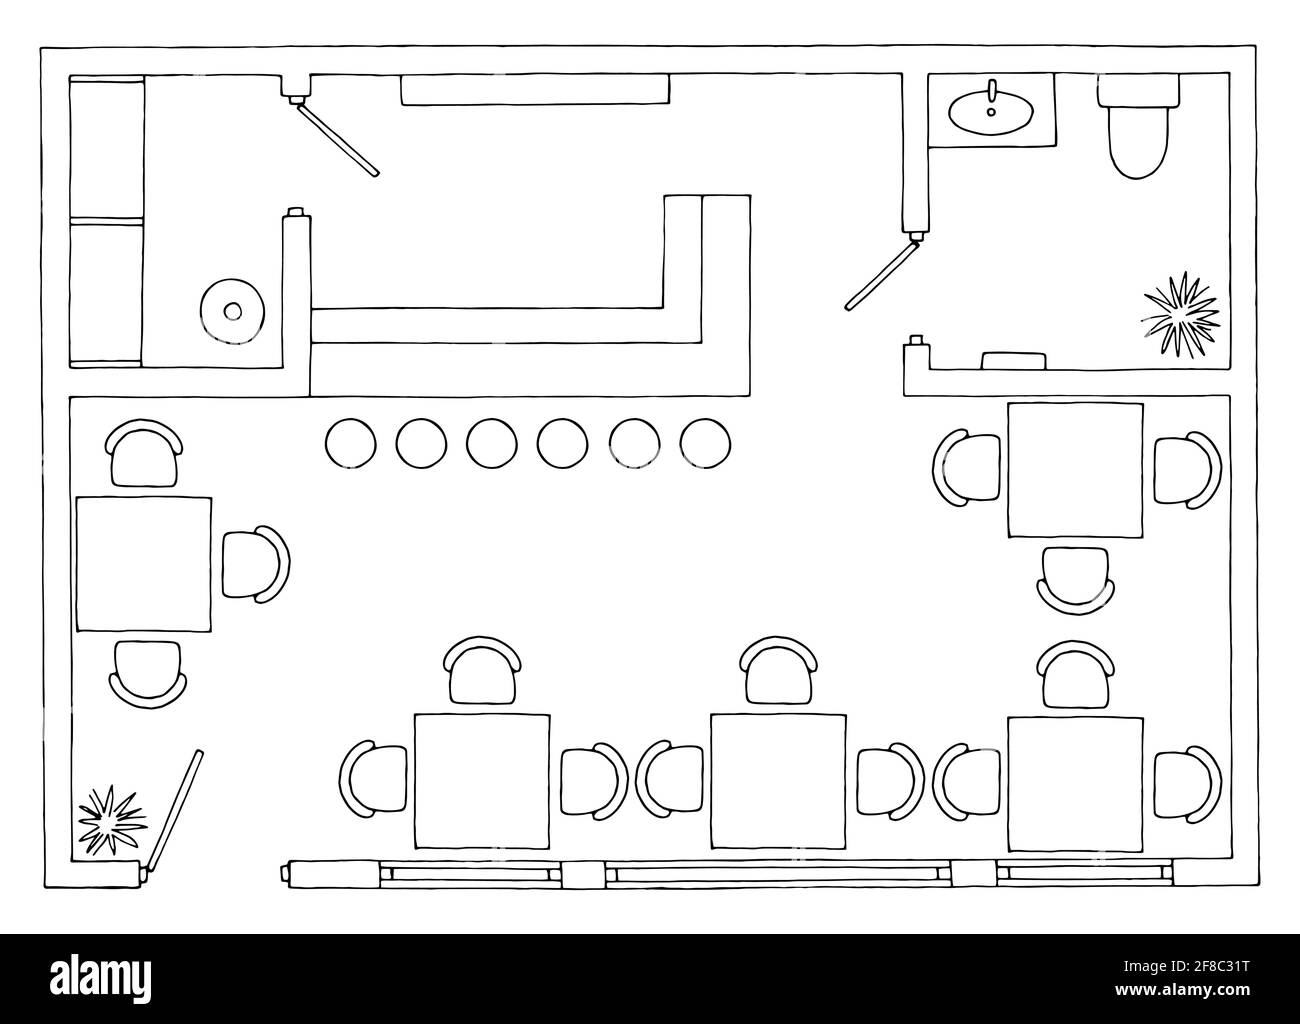 Piano caffè architettura pavimento arredamento interno grafico bianco nero schizzo vettore di illustrazione Illustrazione Vettoriale